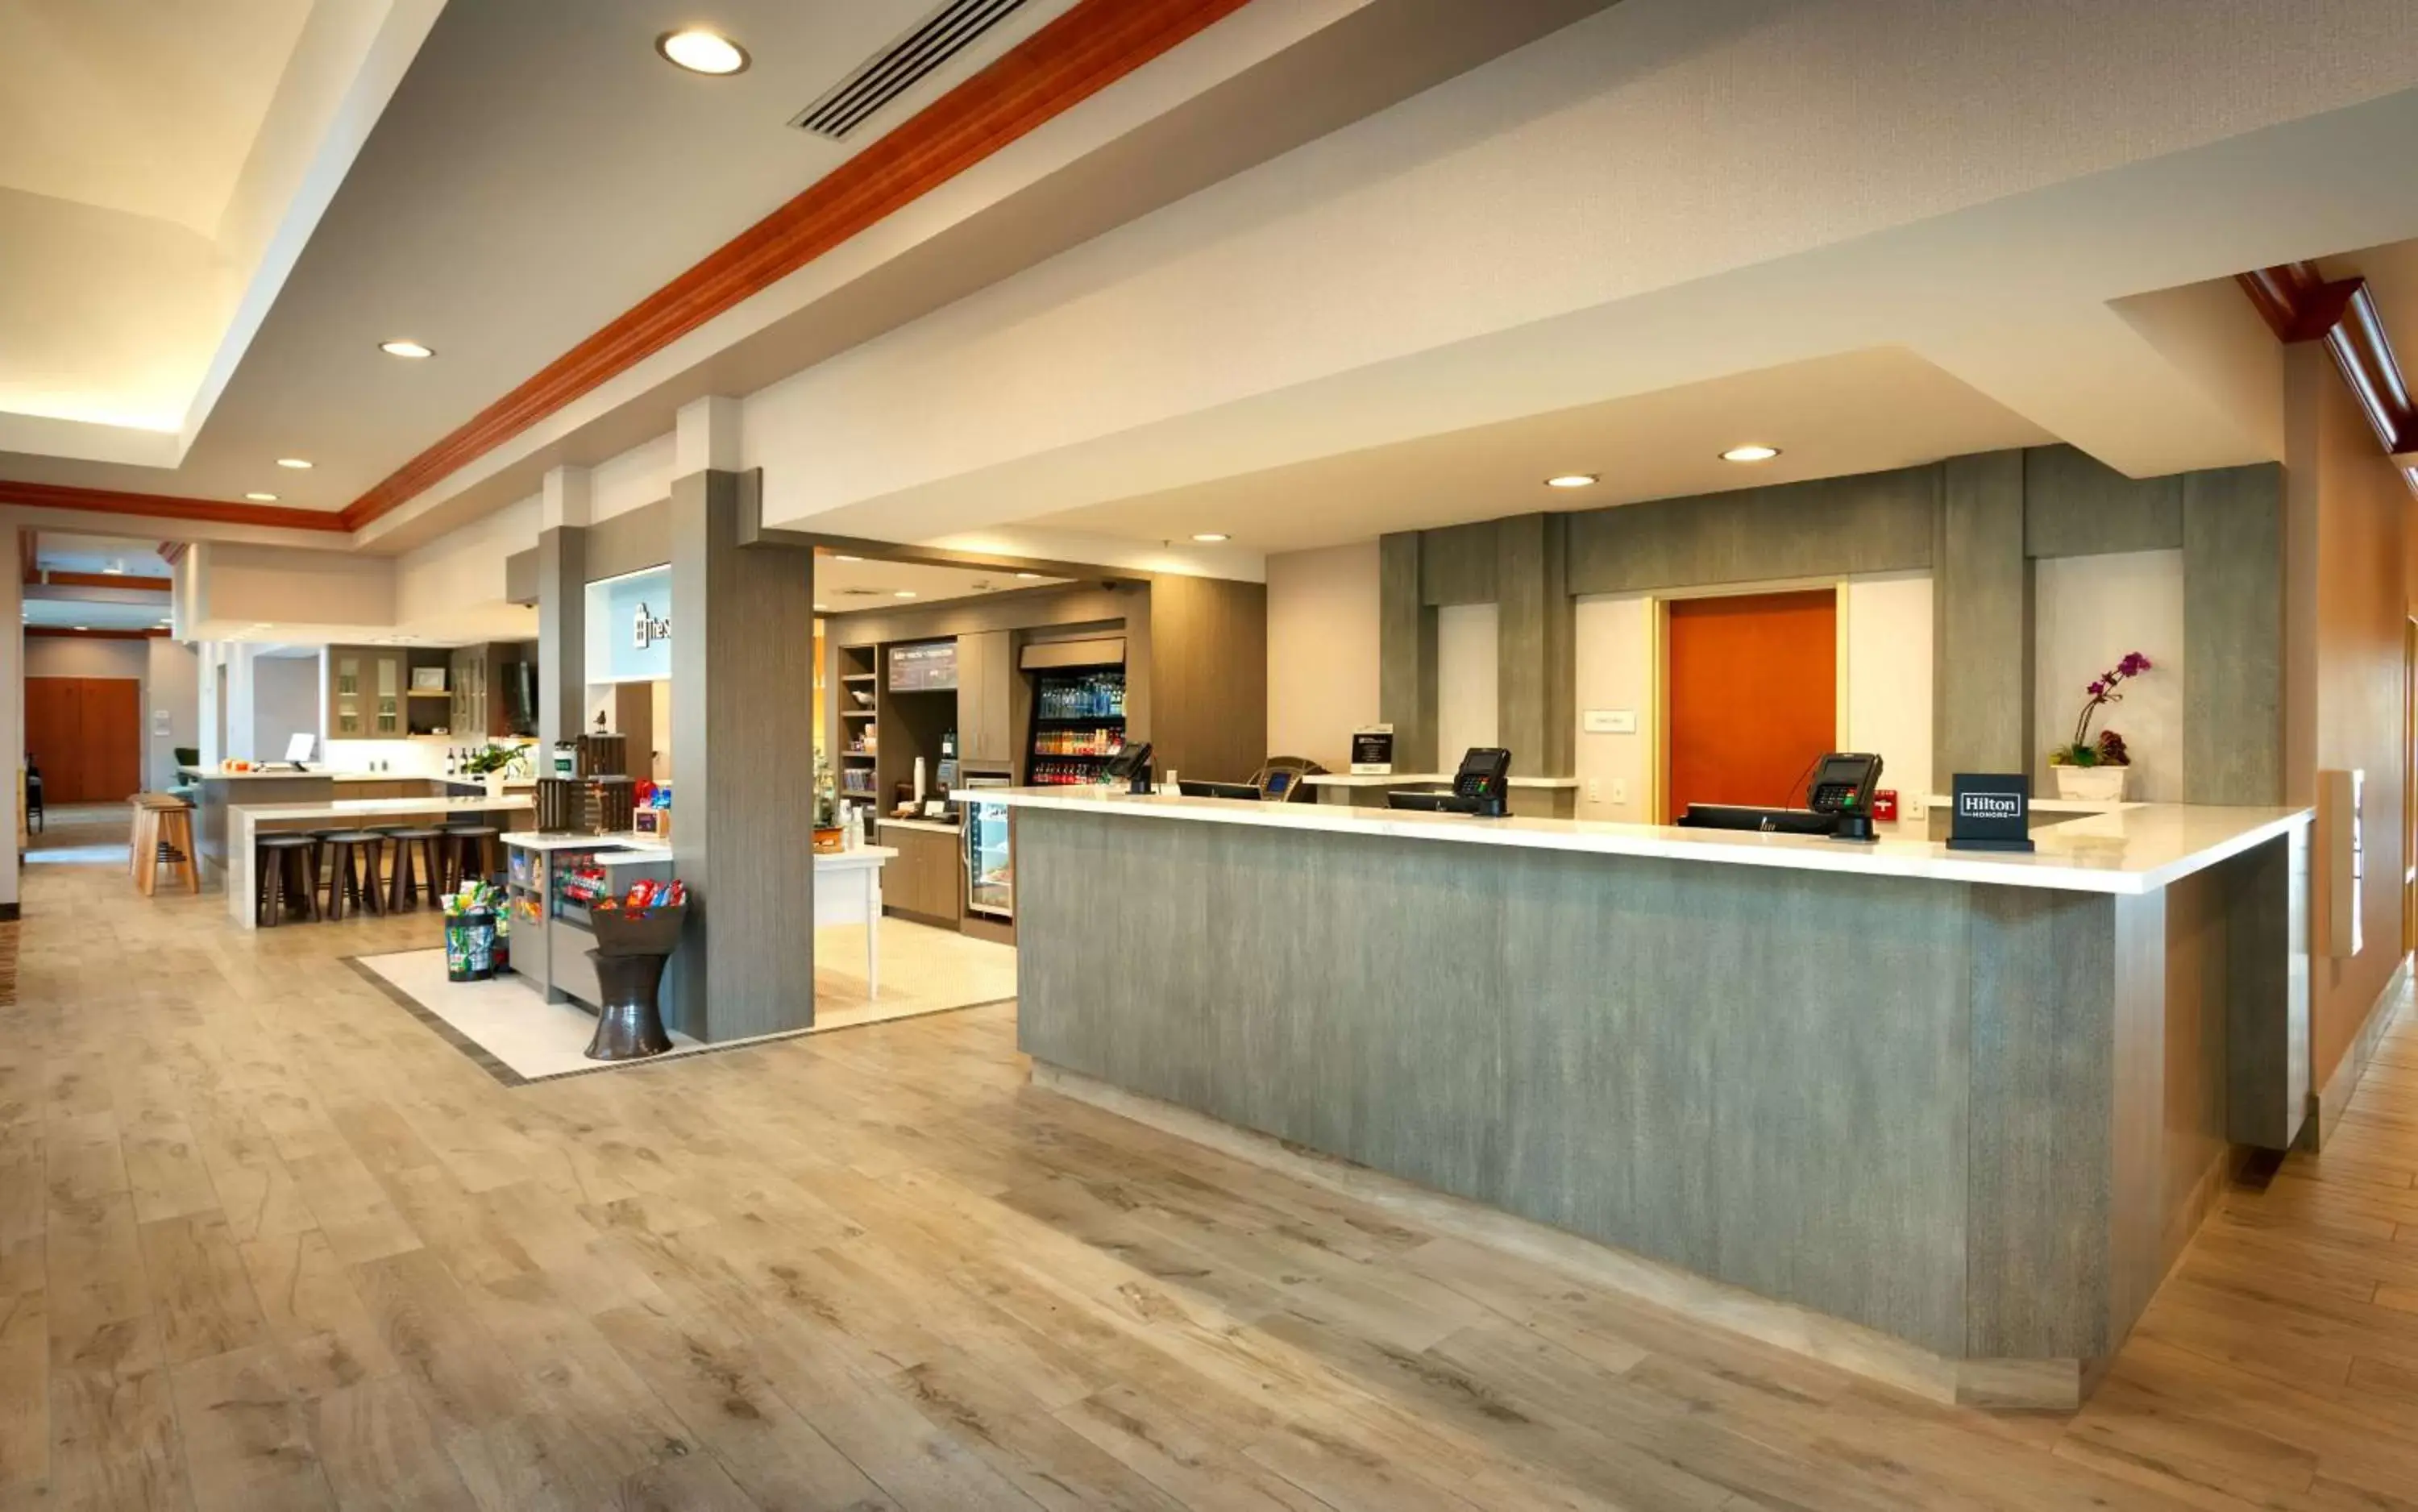 Lobby or reception, Lobby/Reception in Hilton Garden Inn Salt Lake City/Sandy